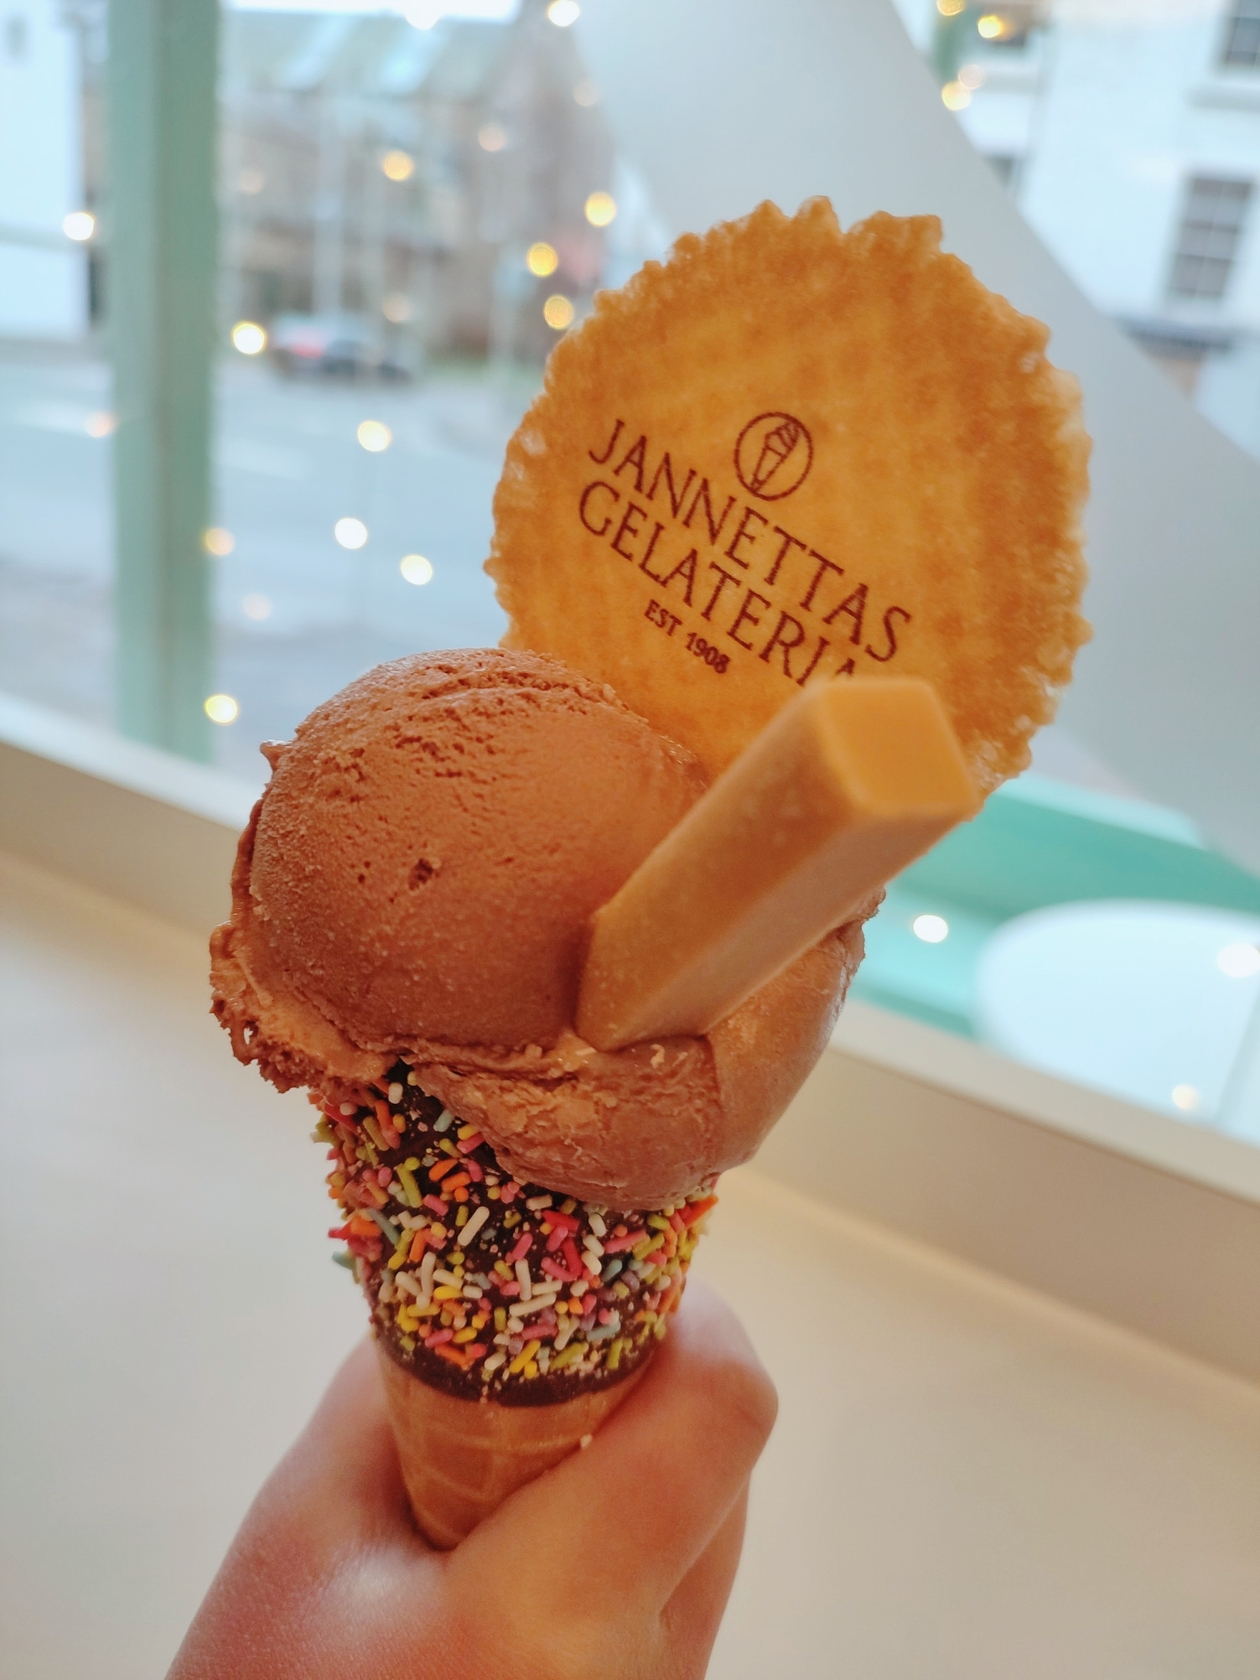 Jannettas Gelateriaのアイスクリーム